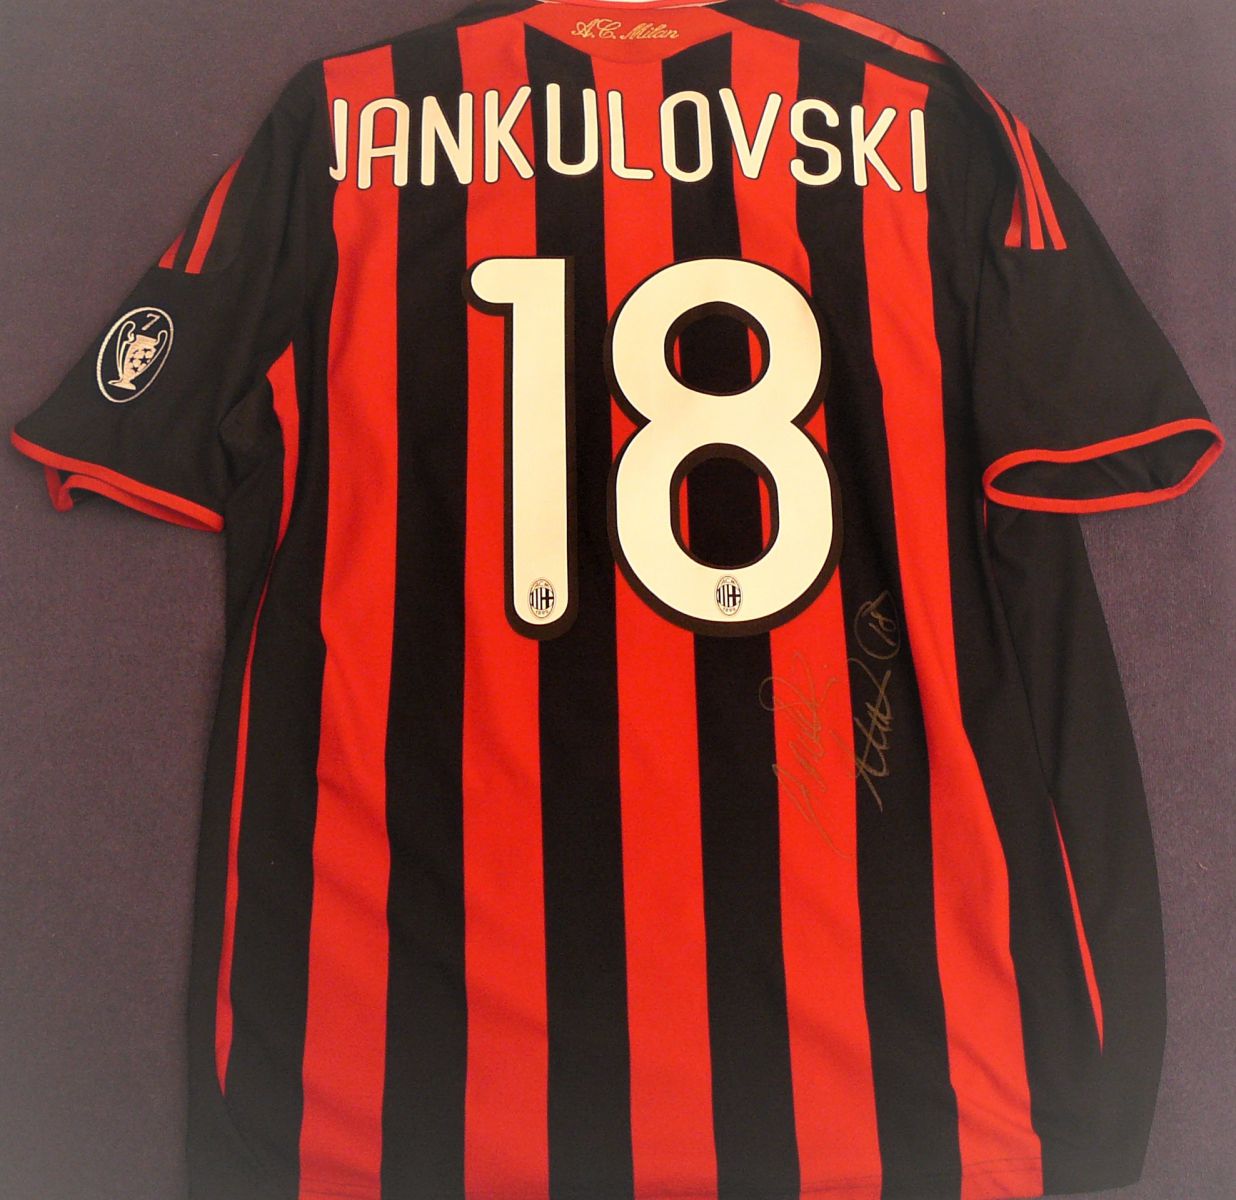 Originál hraný dres Jankulovskiho z AC Milán s podpisem